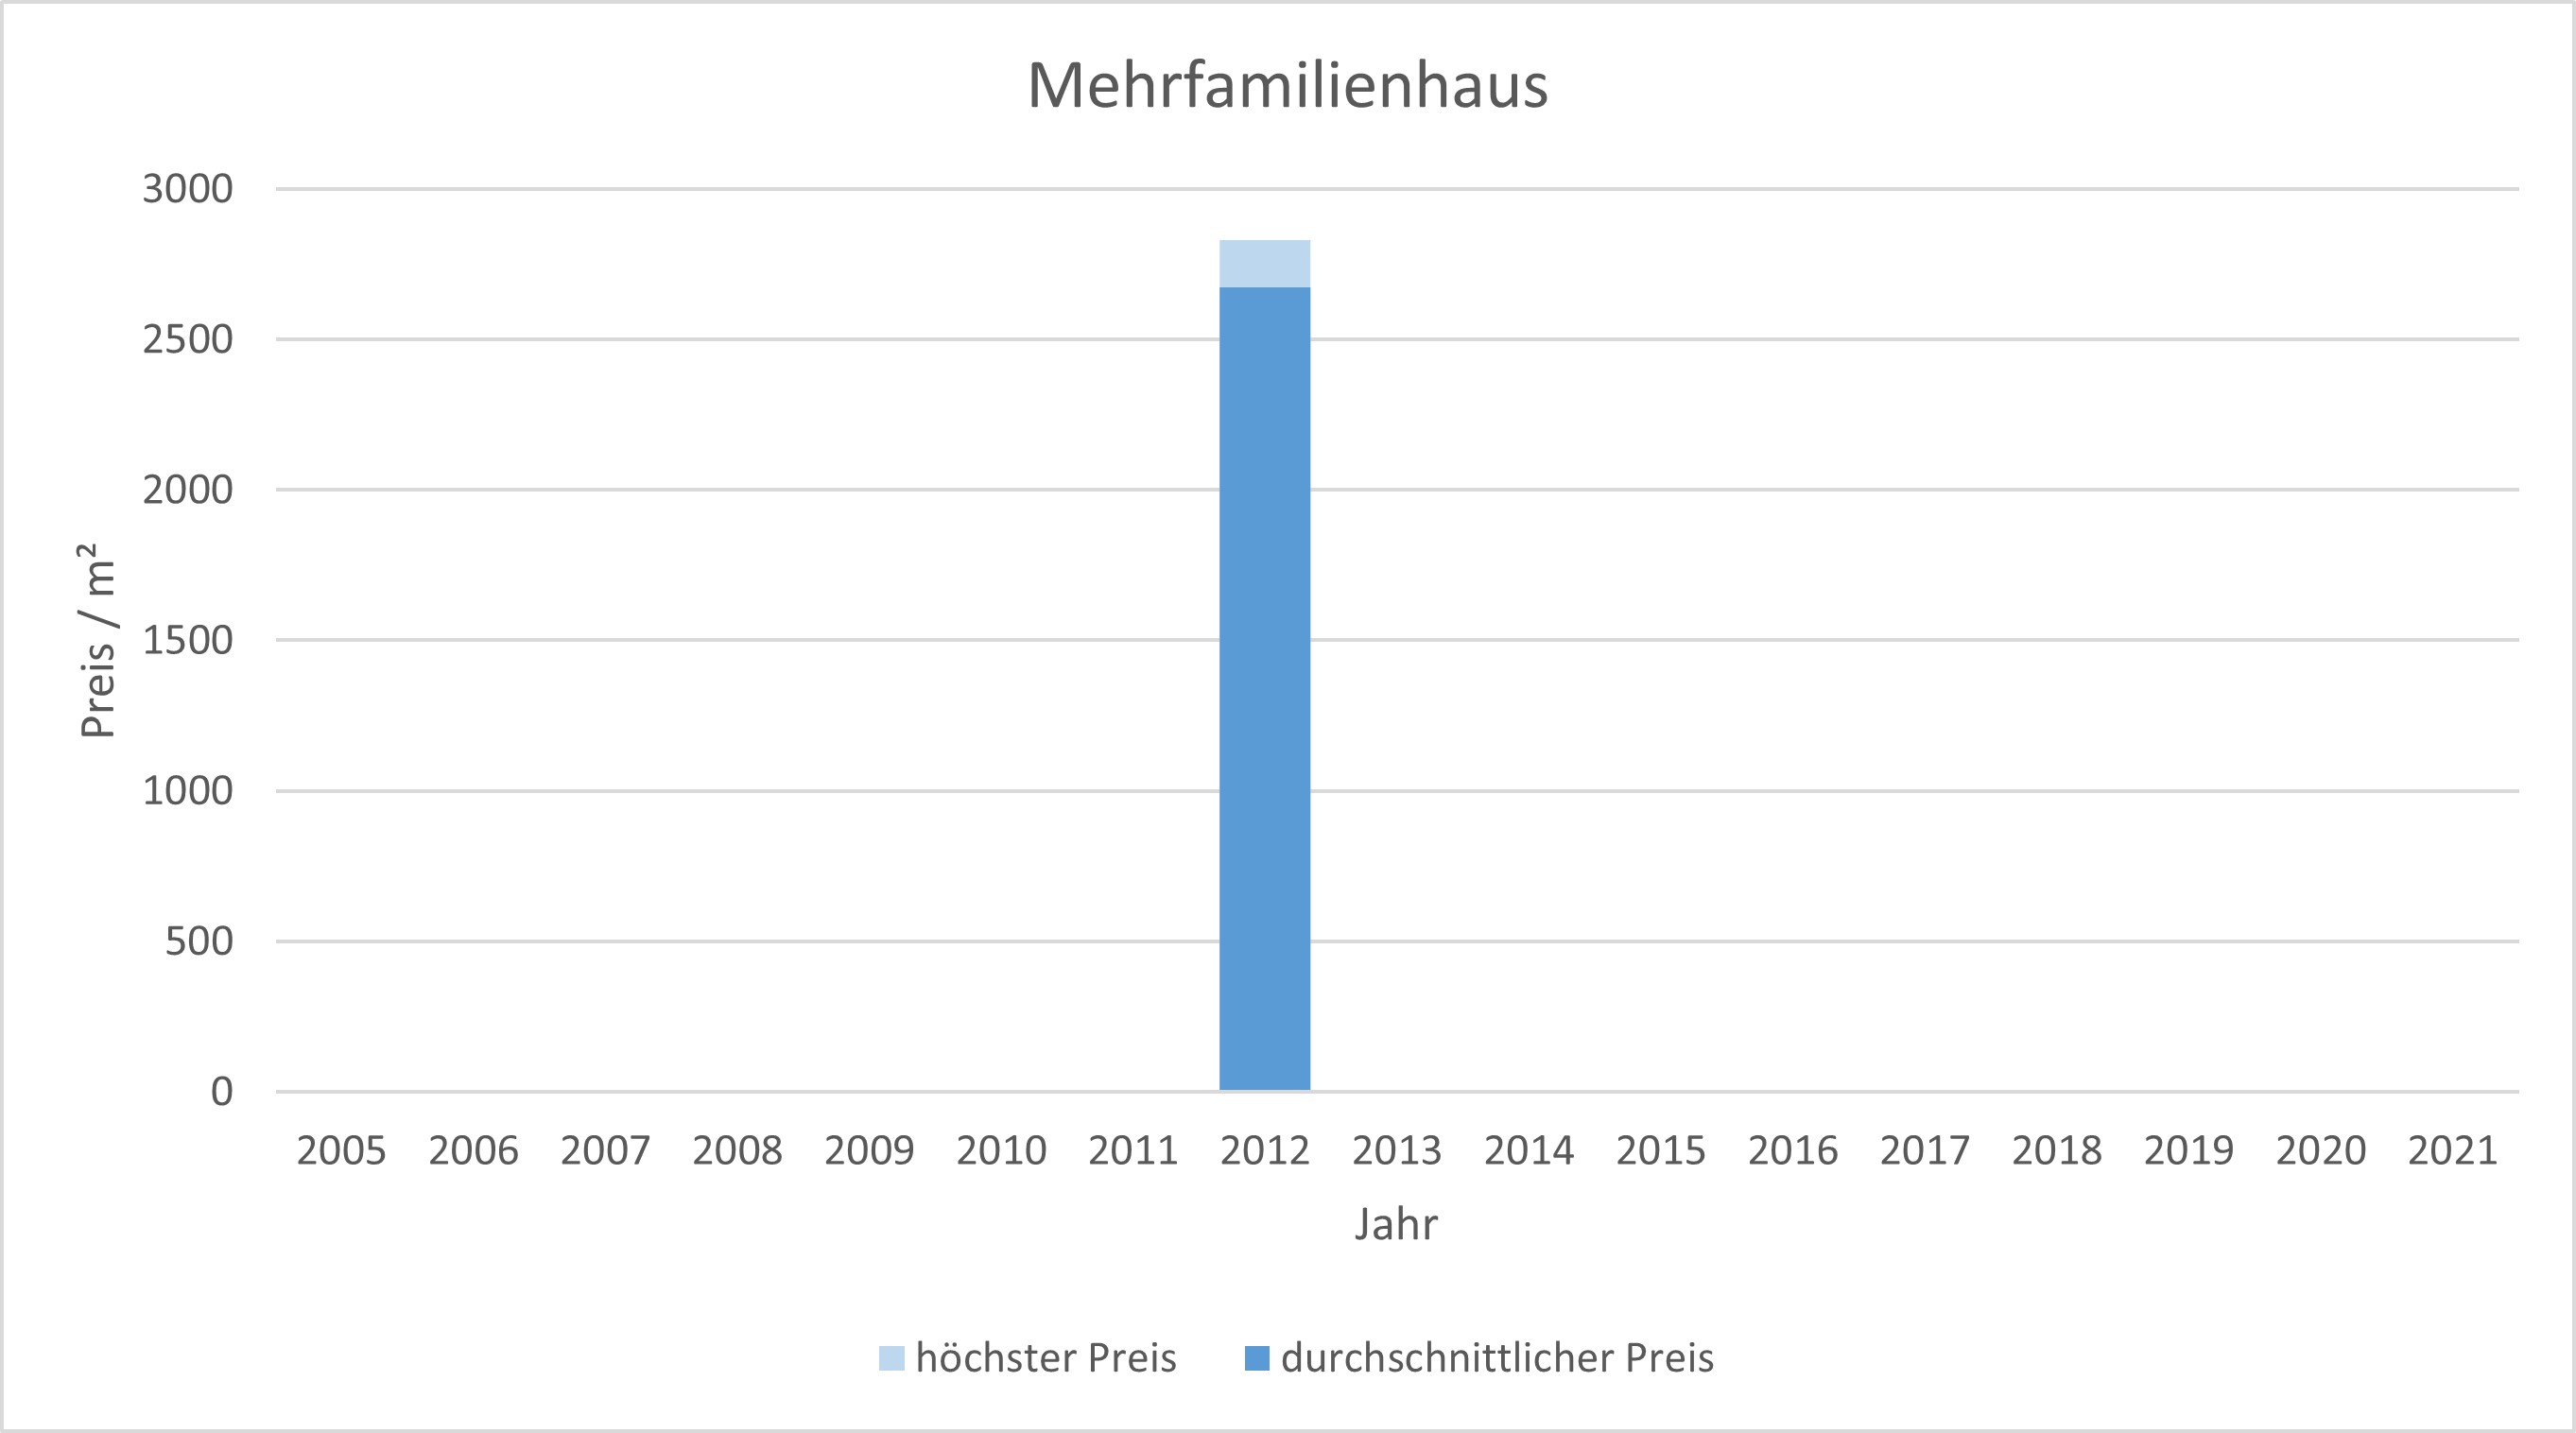 Bruck Mehrfamilienhaus kaufen verkaufen preis bewertung makler www.happy-immo.de 2019, 2020, 2021